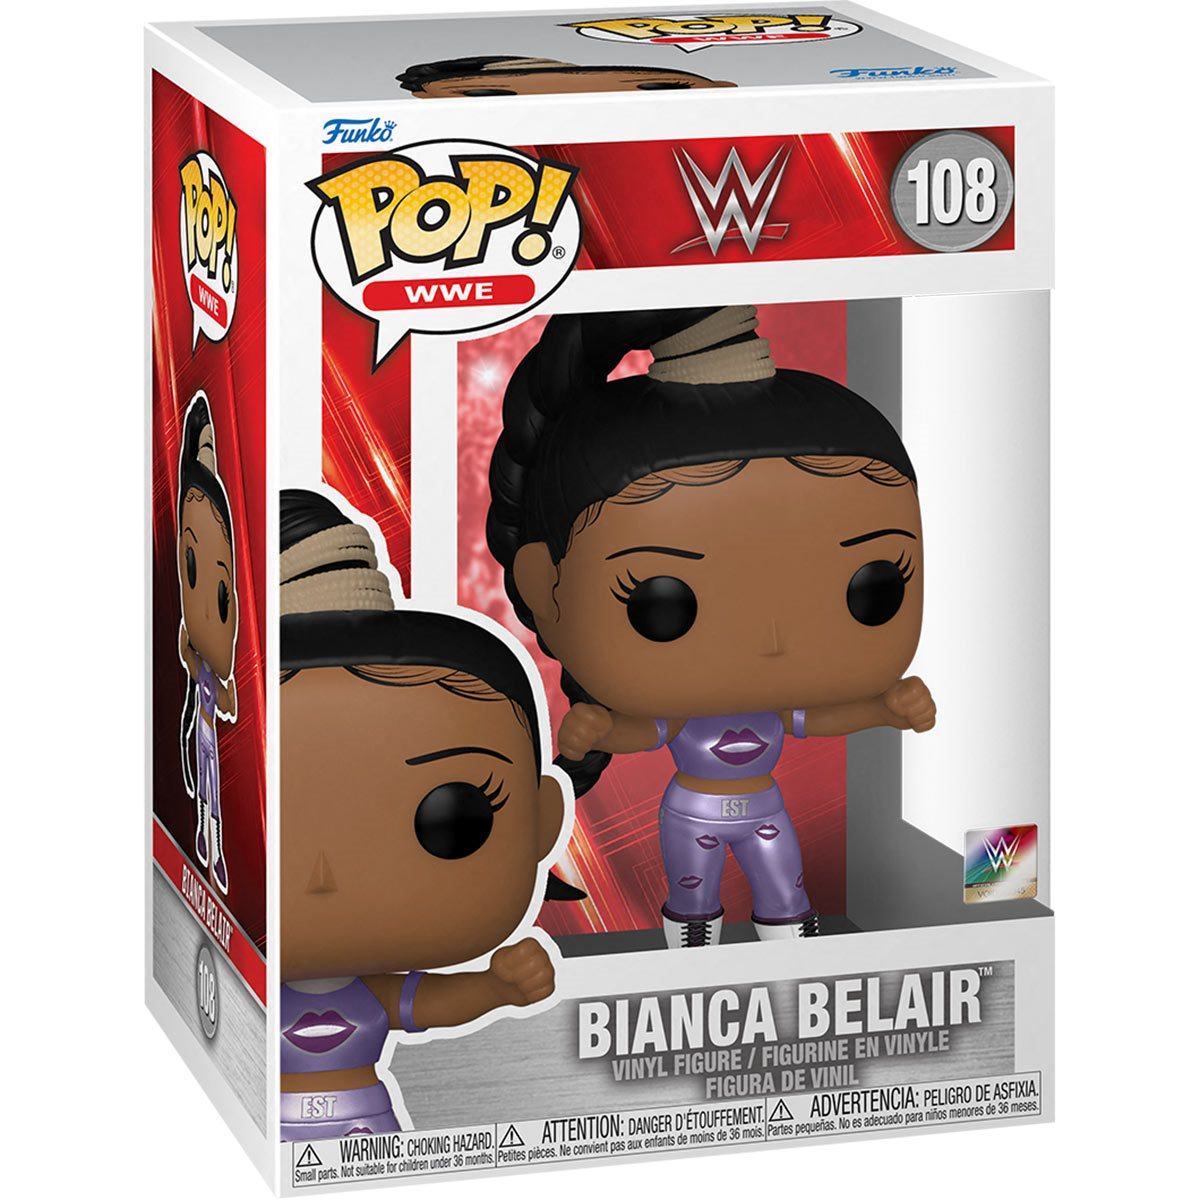 WWE: Bianca Belair Pop! Vinyl Figure (108)